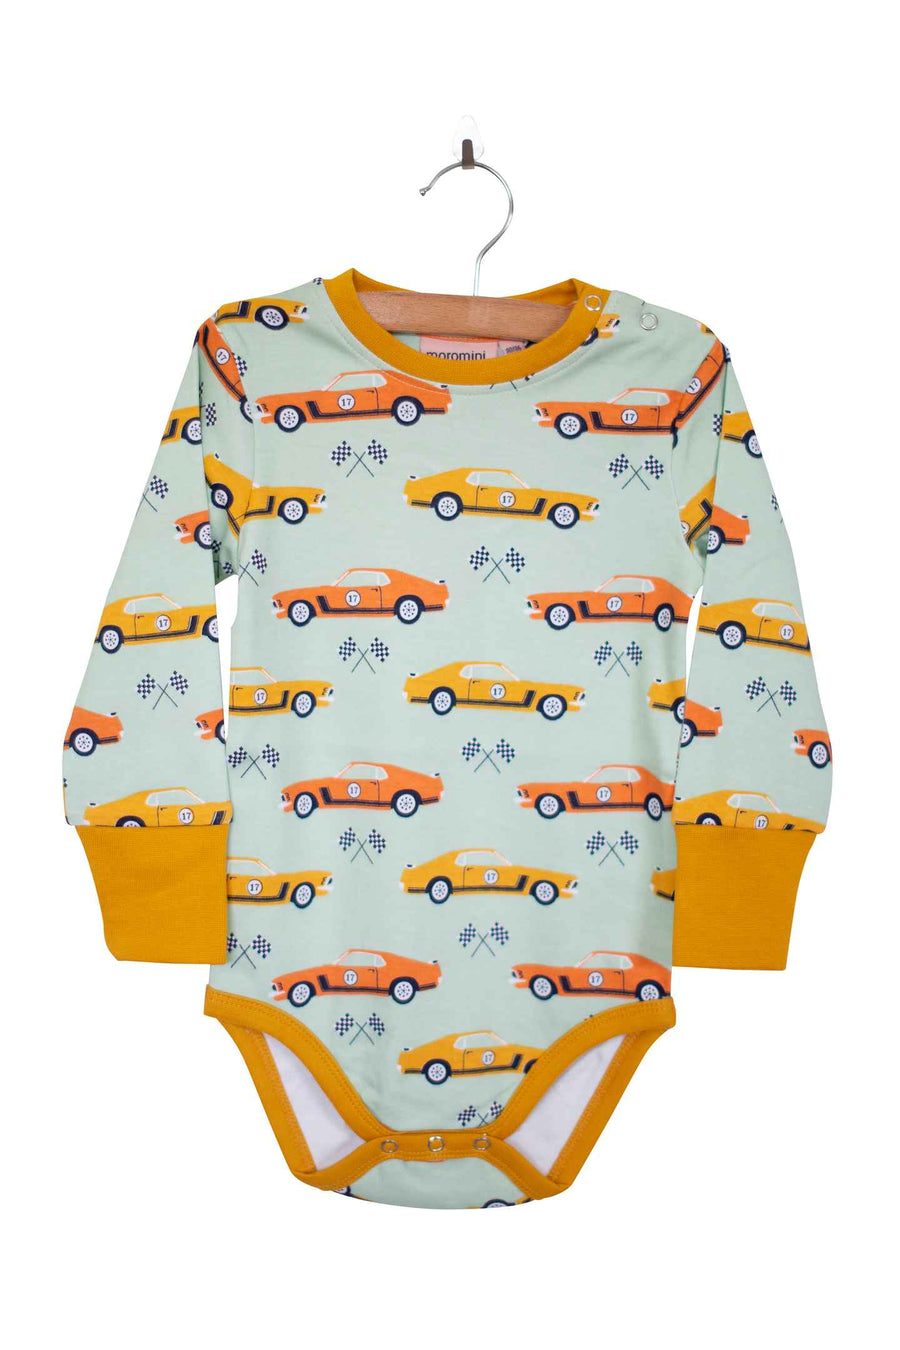 Moromini Baby Race Car Bodysuit